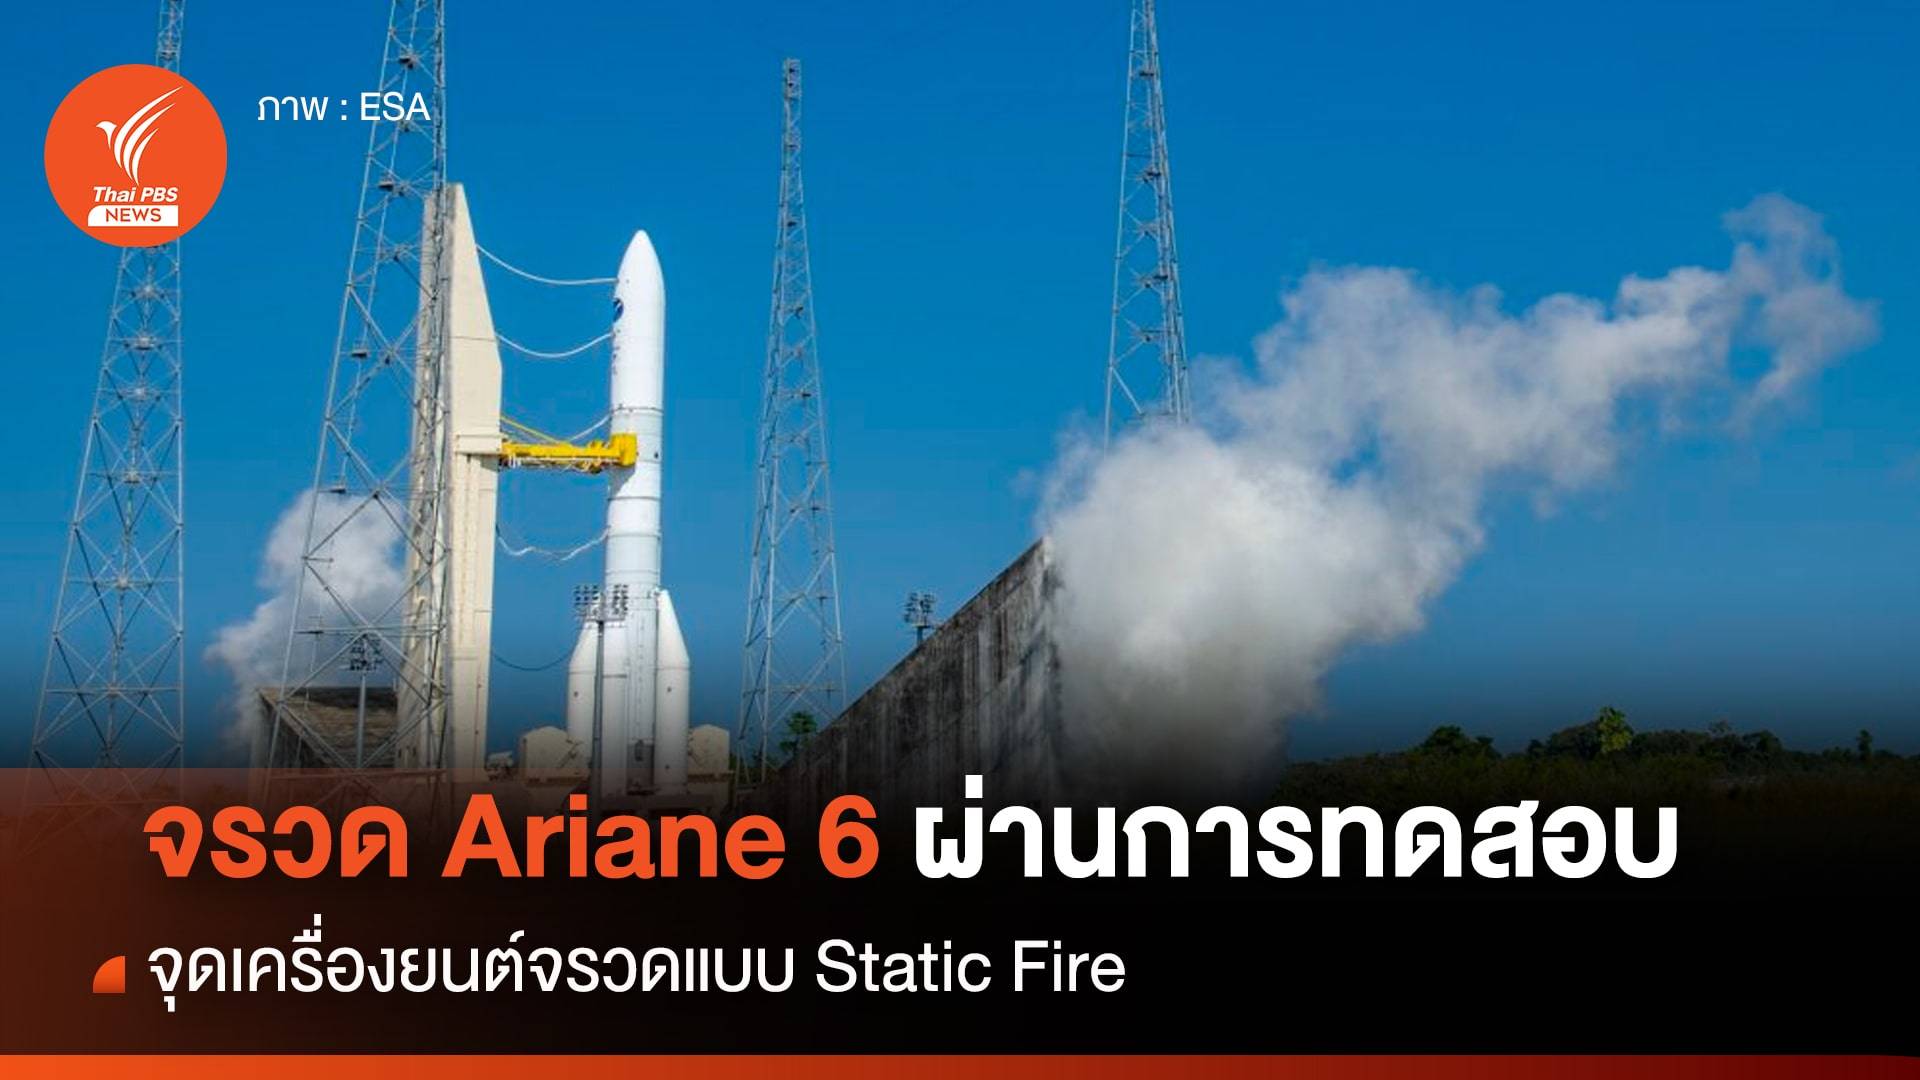 จรวด Ariane 6 ผ่านการทดสอบ Static Fire